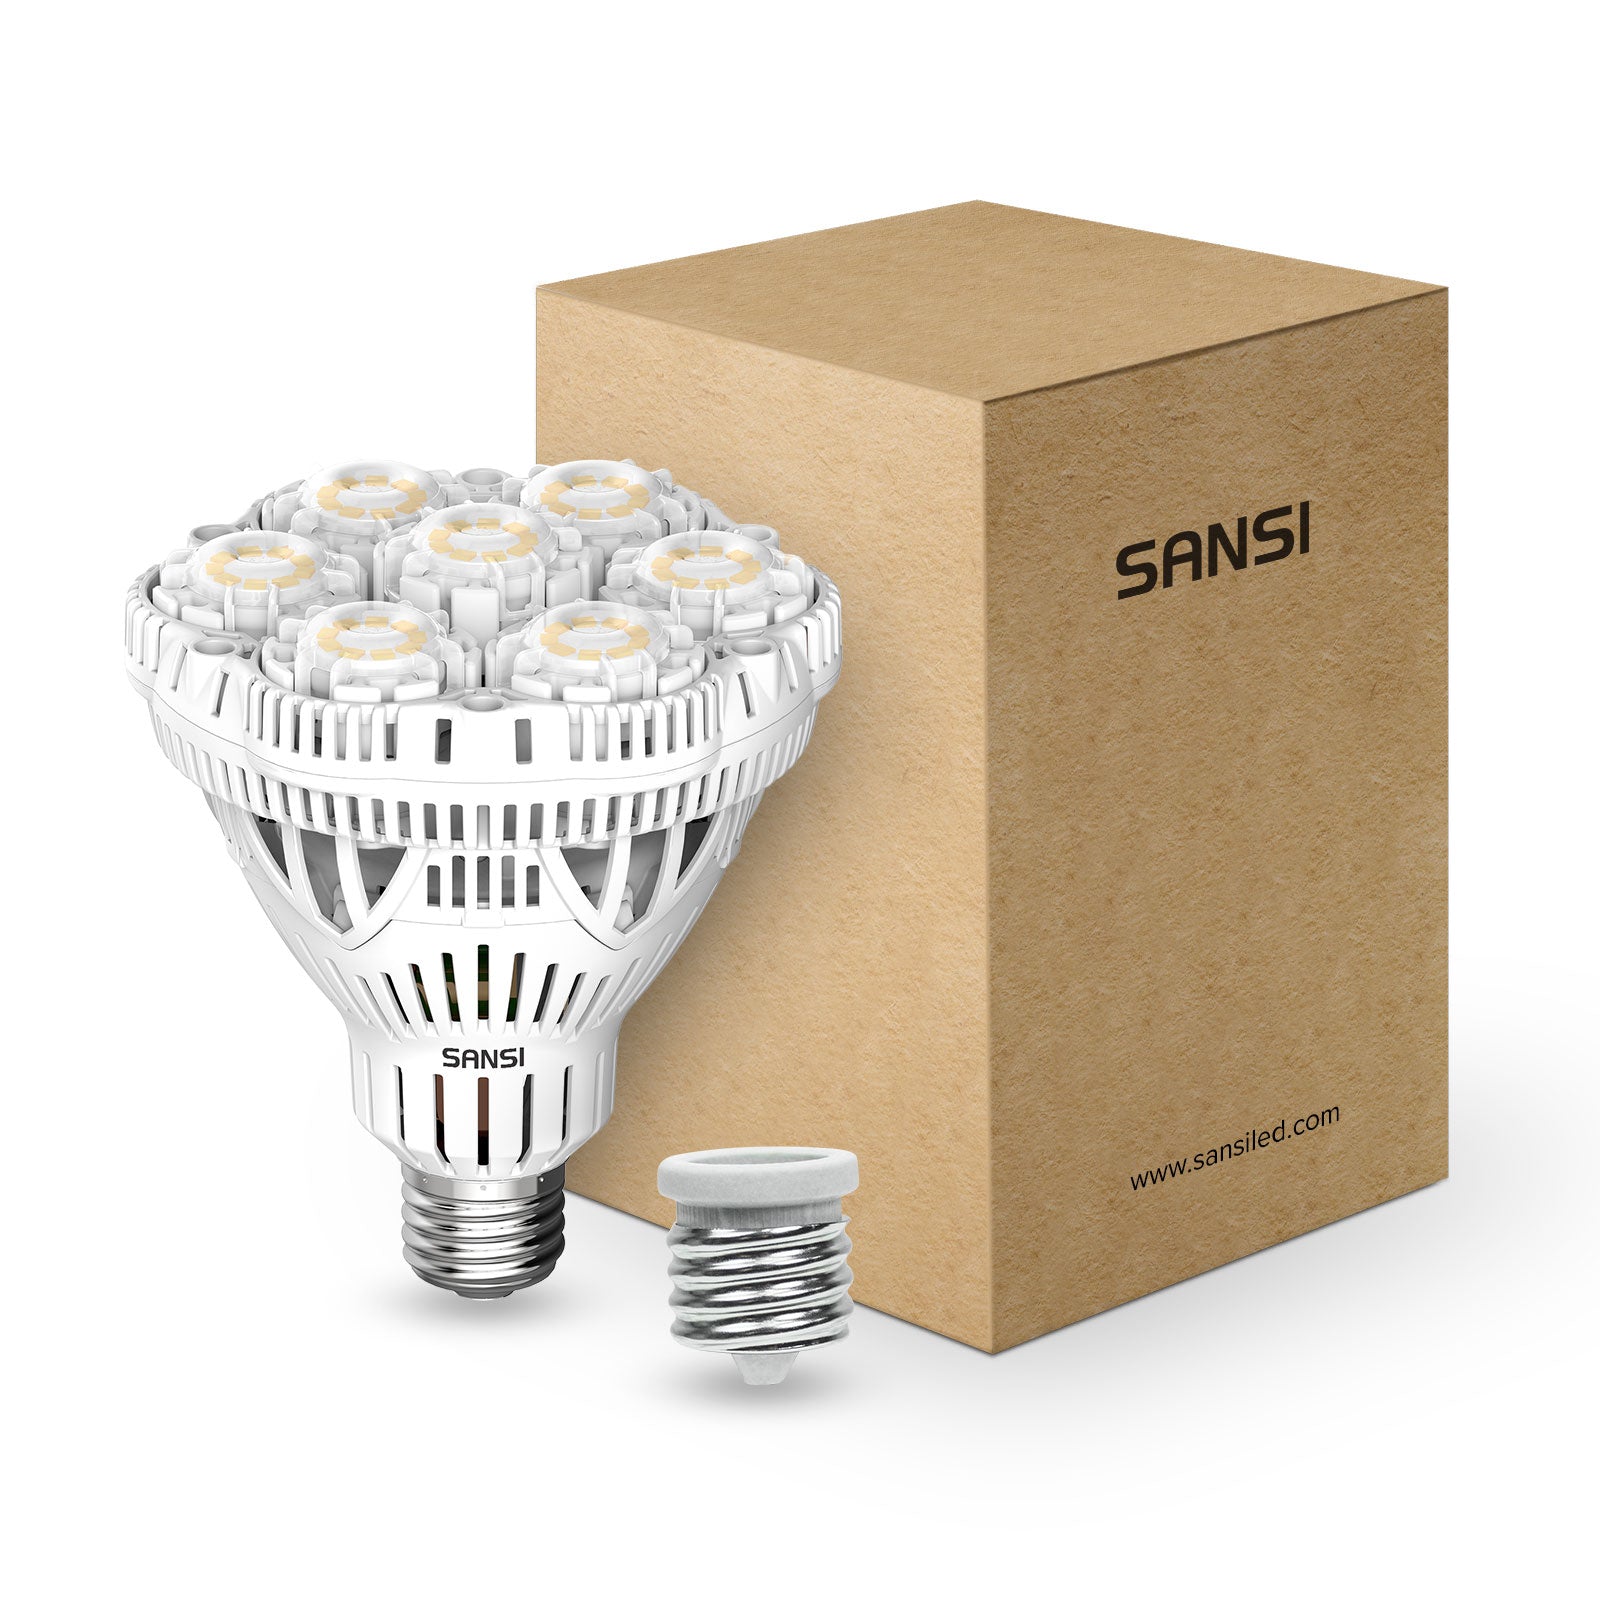 LEDinside: LED Light Bulbs Evaluation (40W Incandescent Light Bulbs)-  Luminous Flux - LEDinside